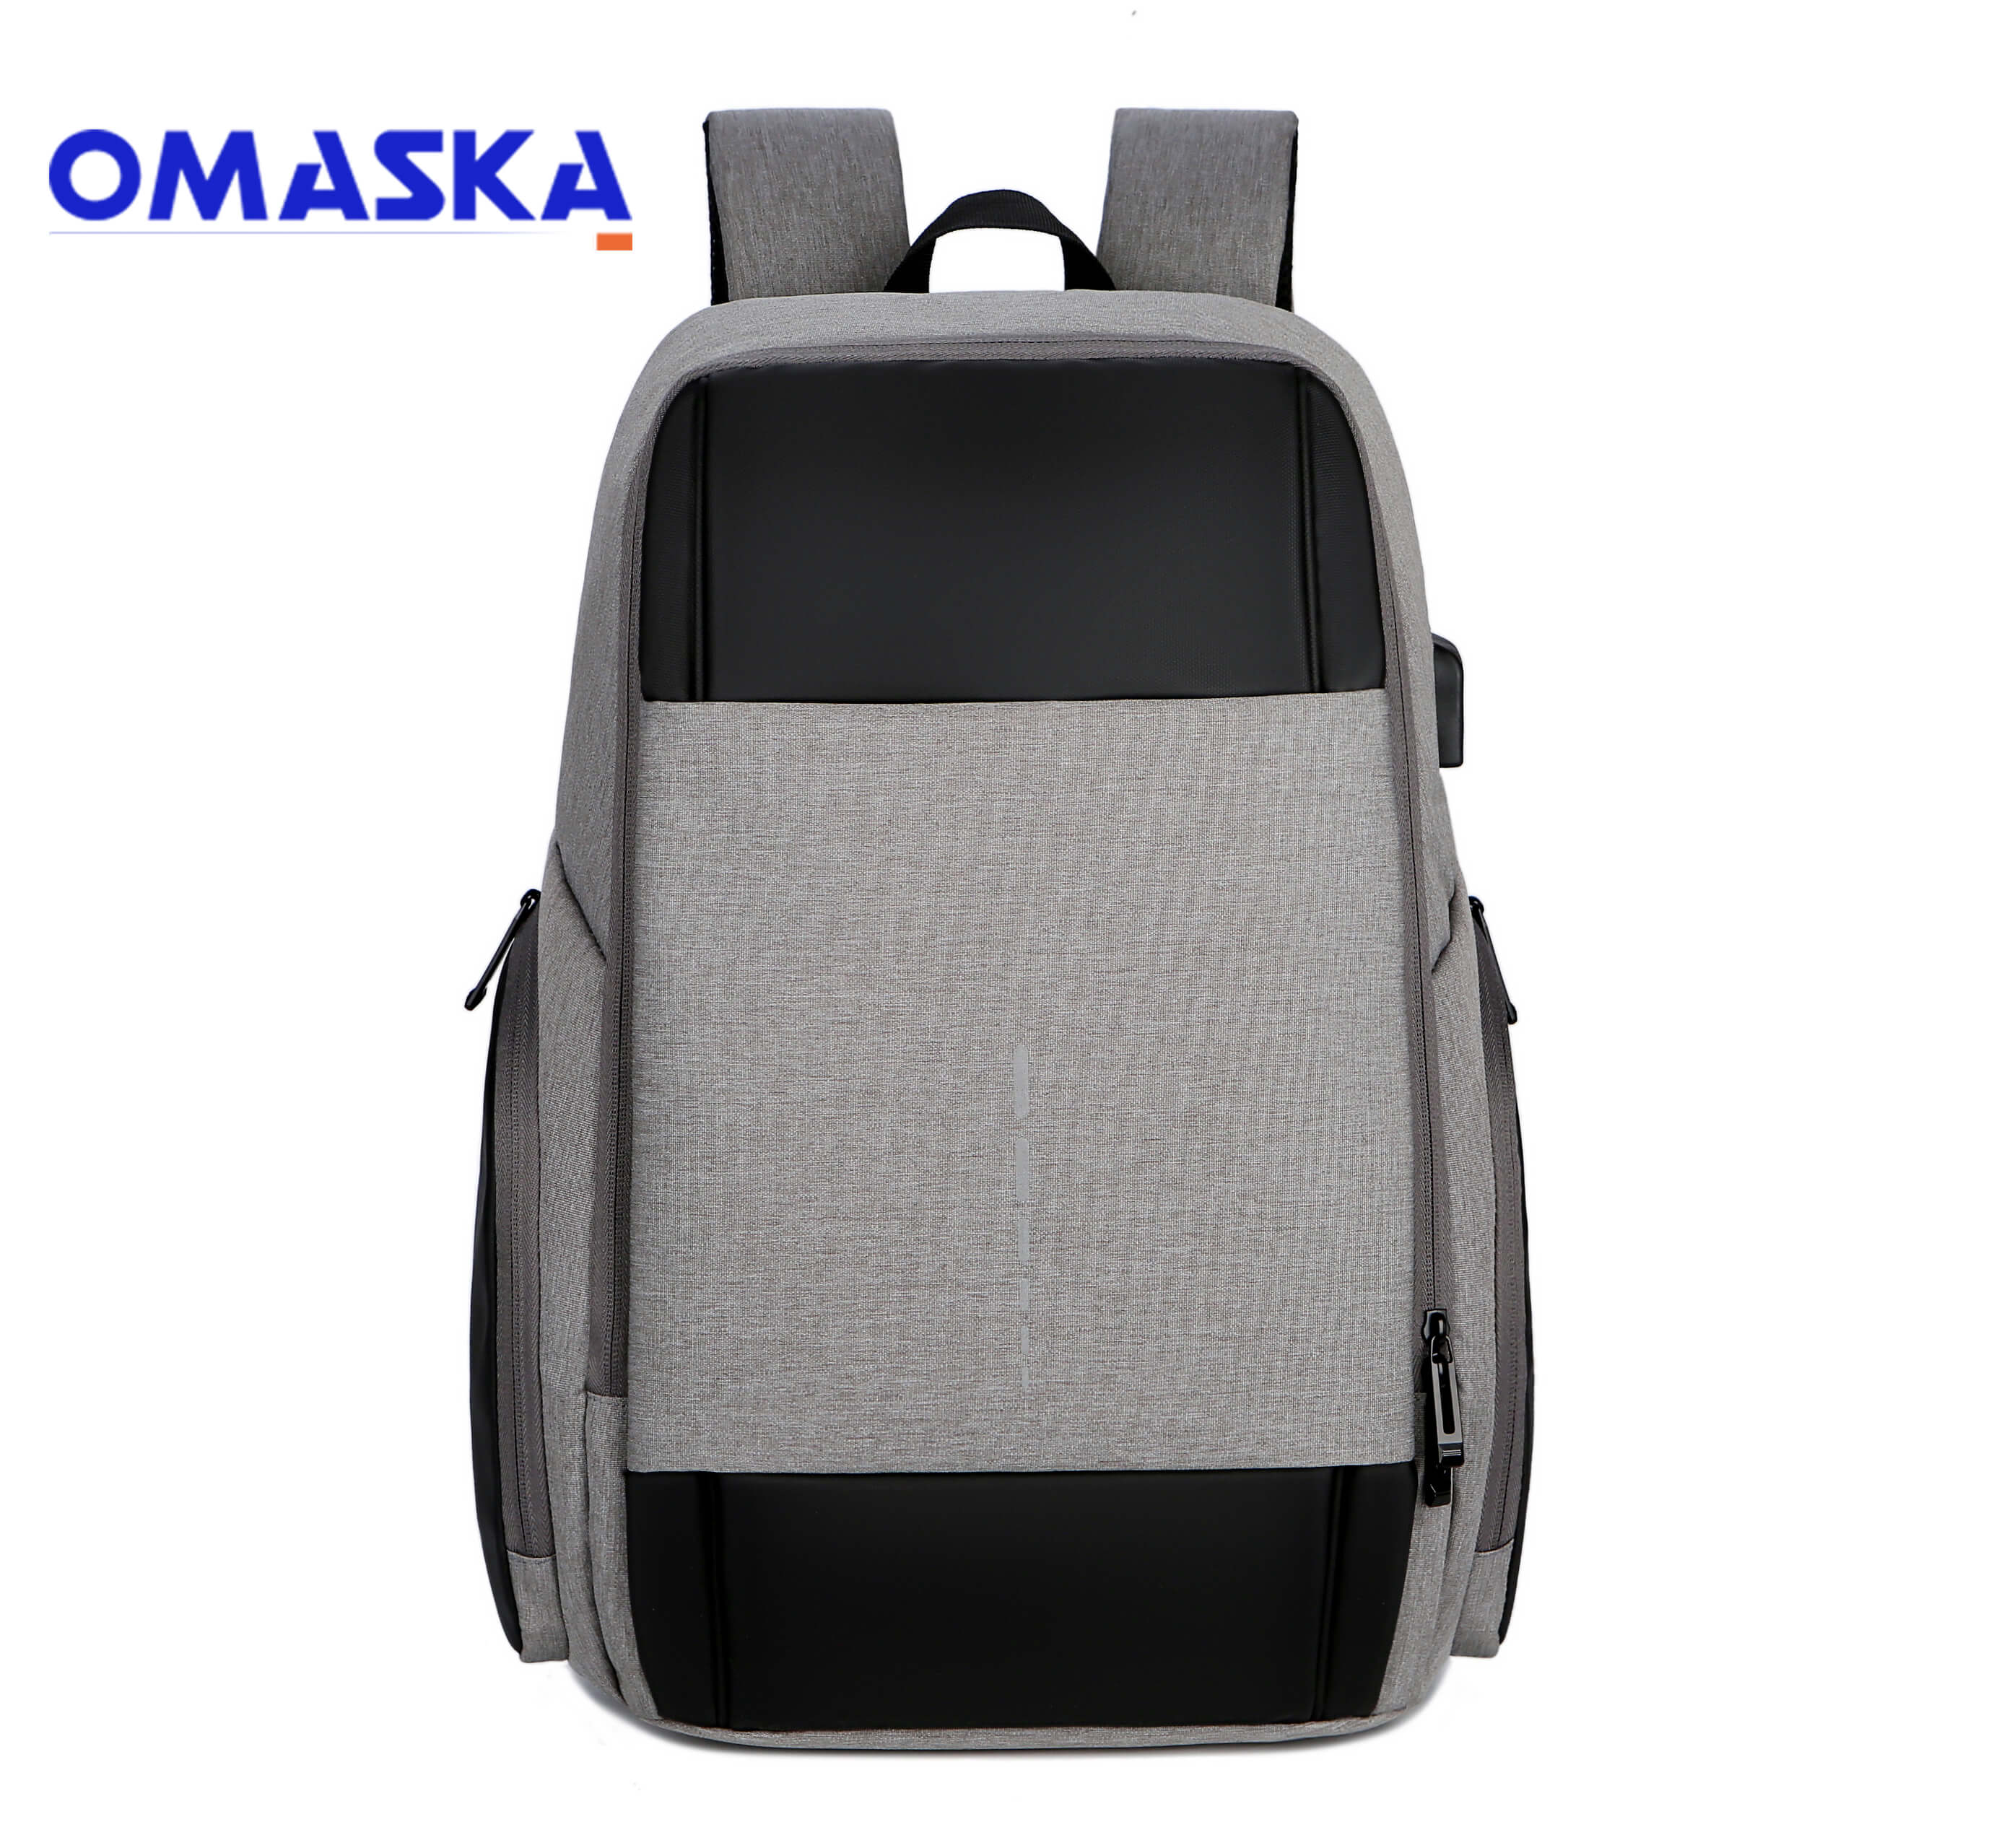 Rapid Delivery for  Custom Backpack With Logo  - Wholesale USB charging port reflective strip laptop backpack bag for men – Omaska